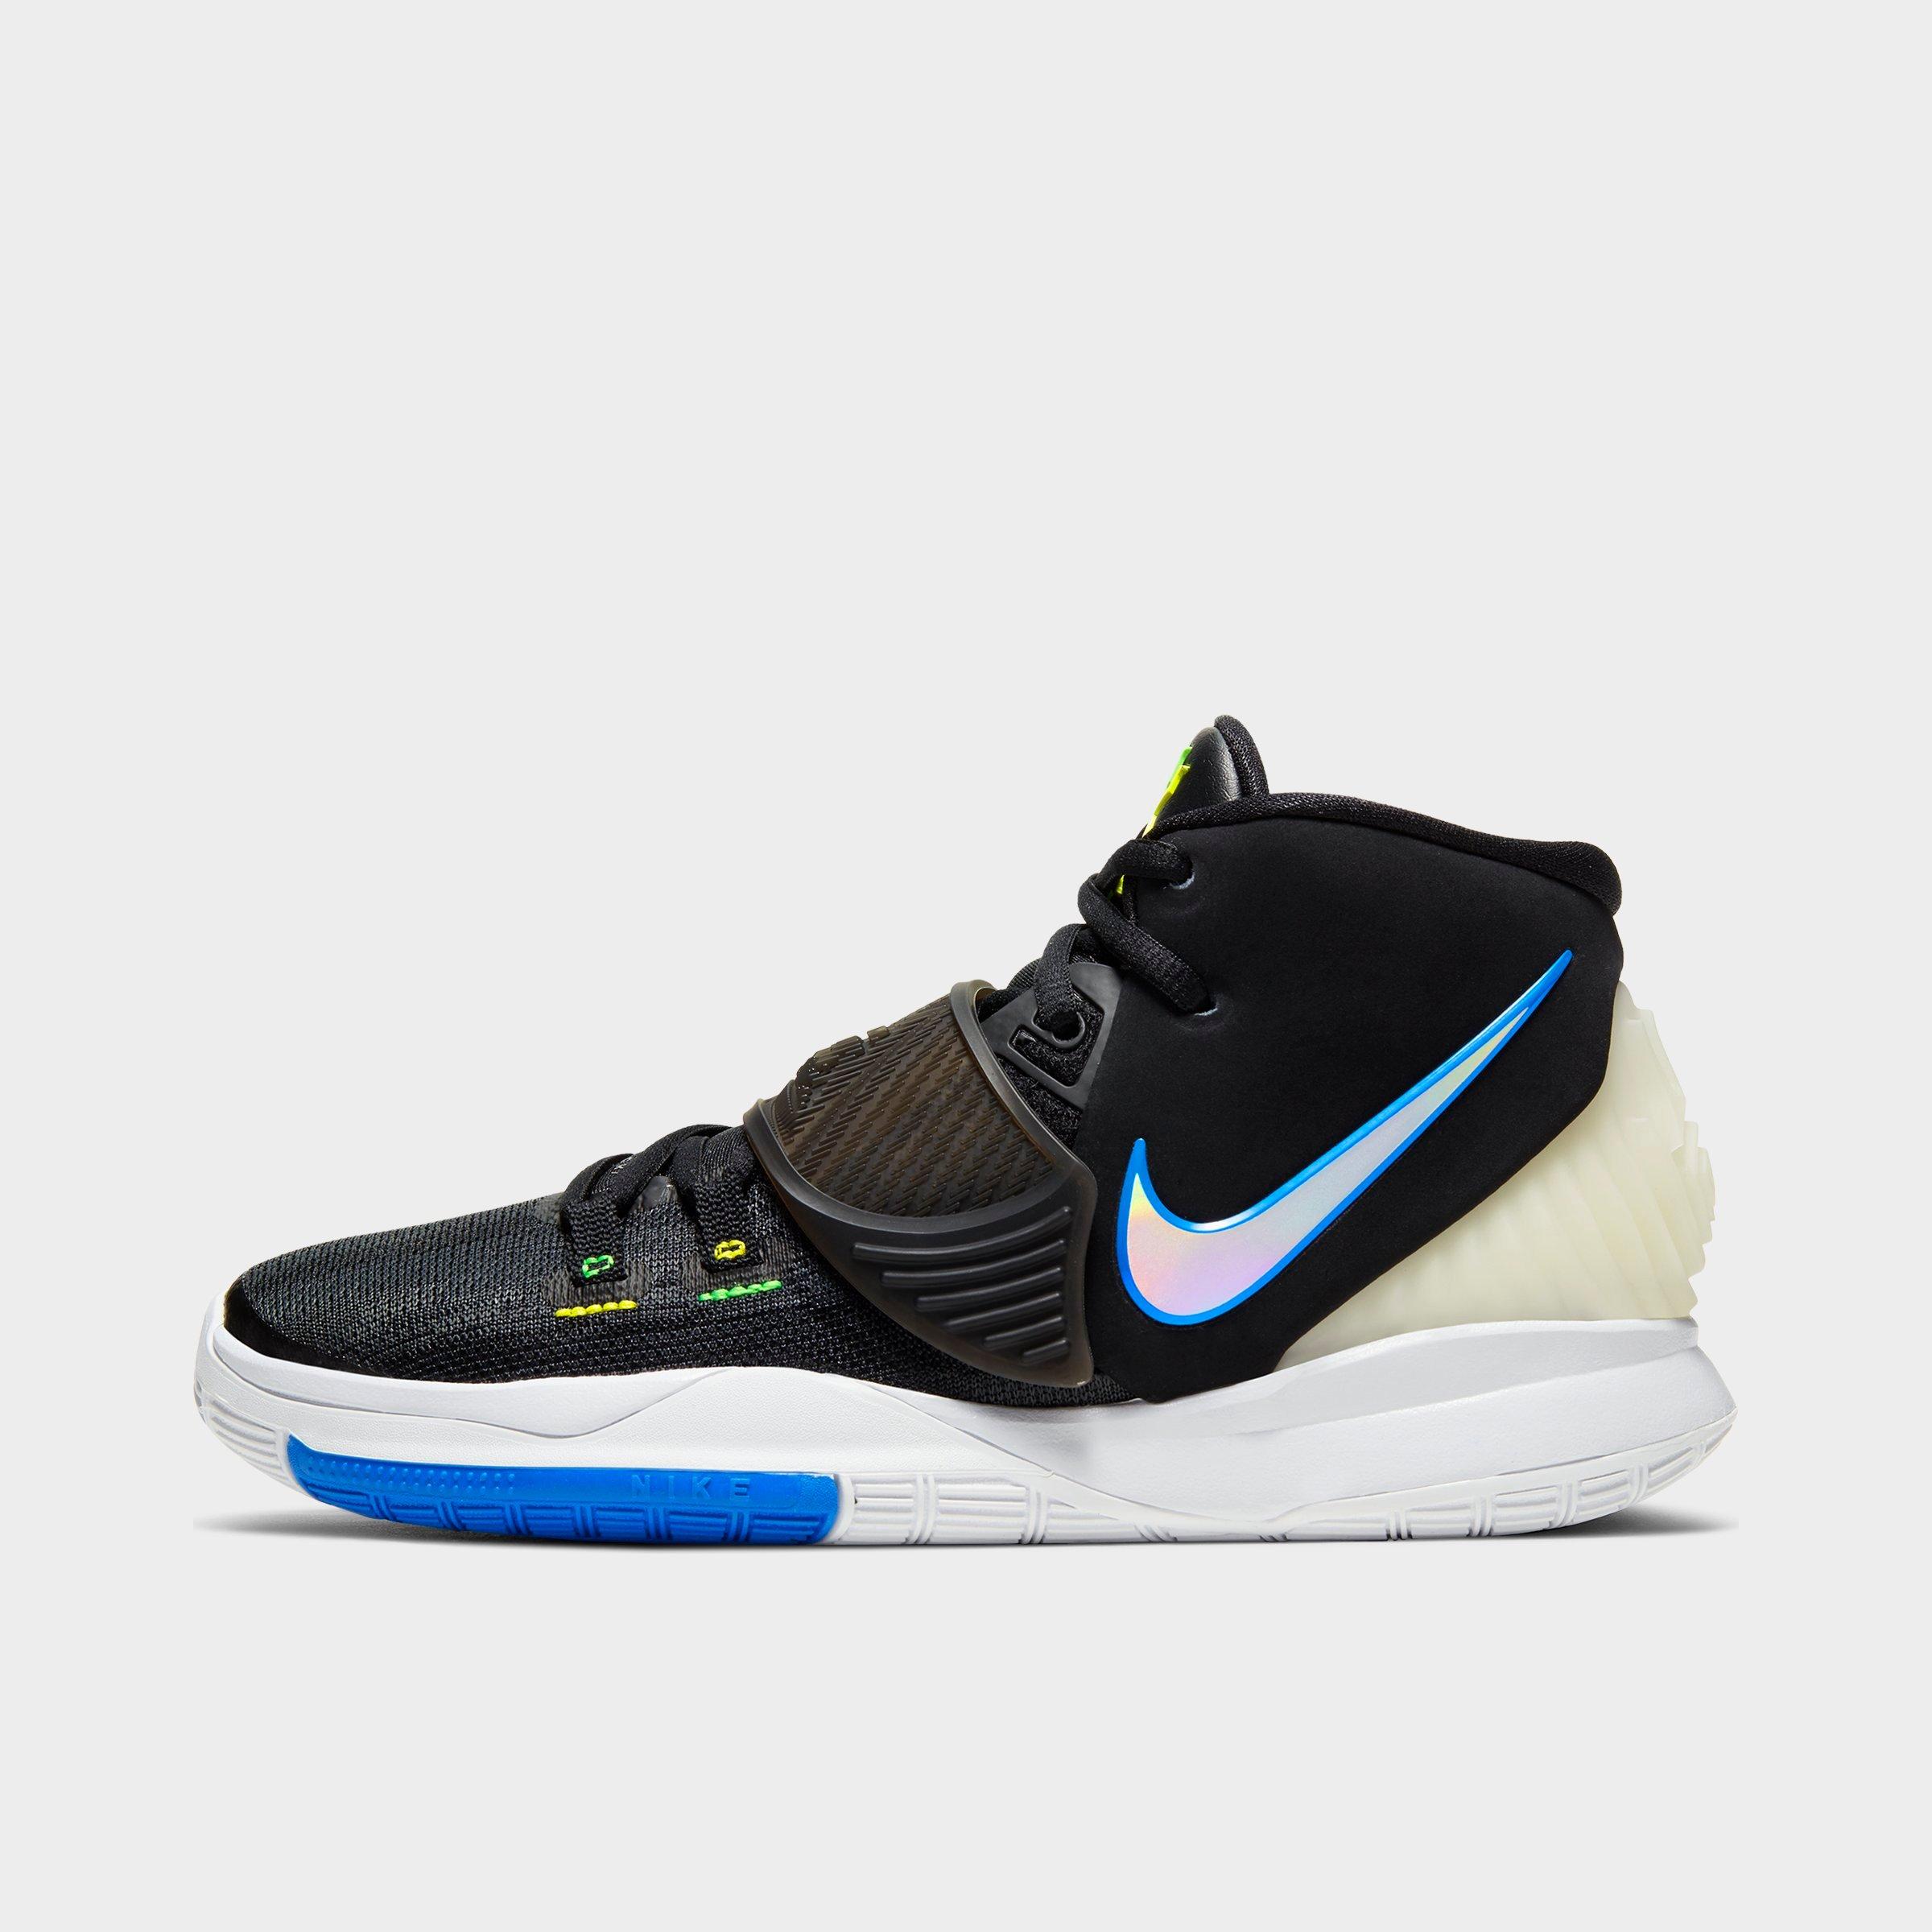 Nike Kyrie 6 Preheat Beijing CQ7634 701 Release Date